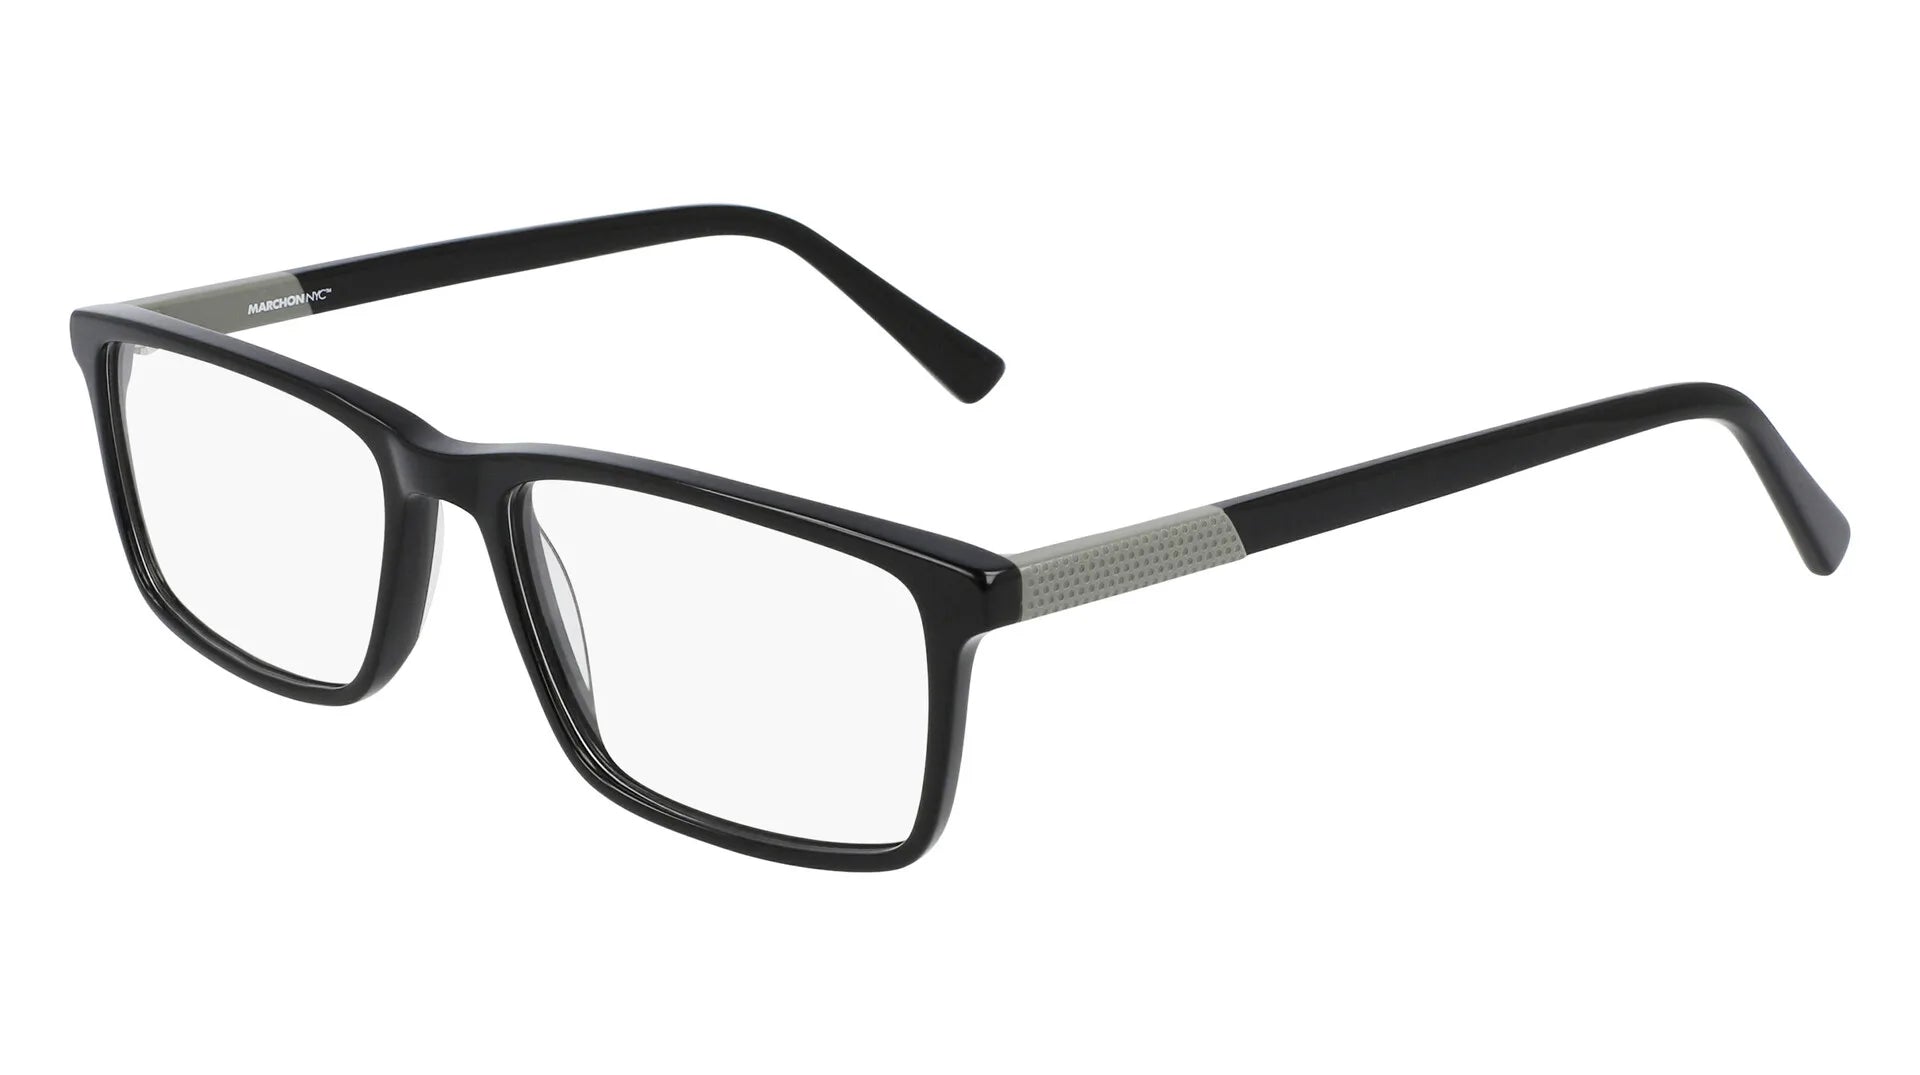 Marchon NYC M-3011 Eyeglasses Black